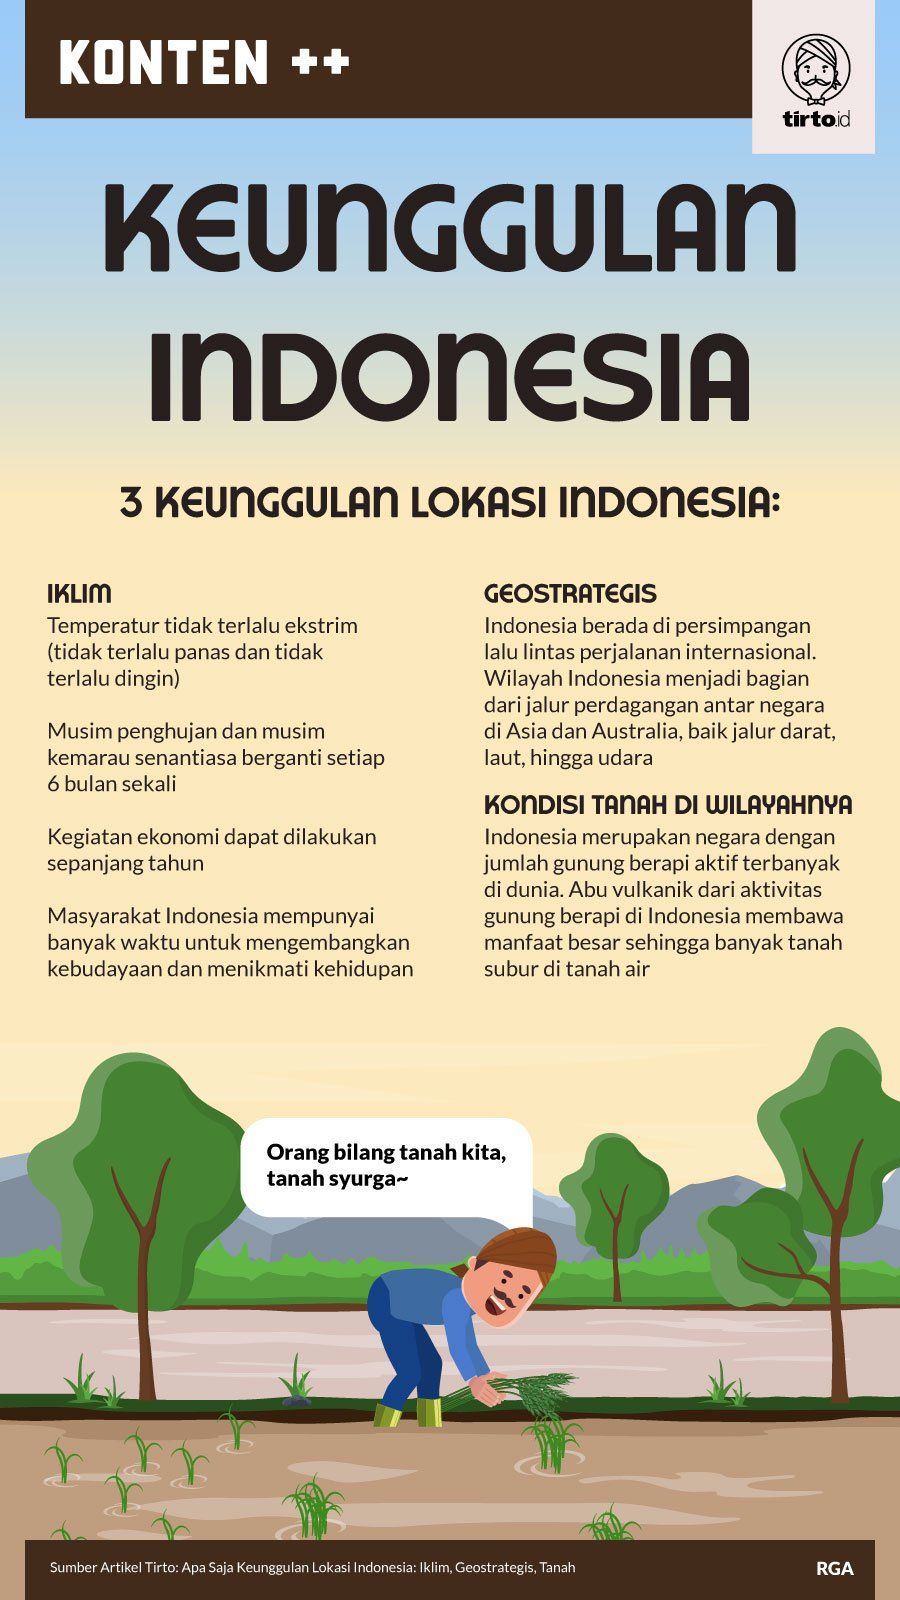 Apa keuntungan indonesia sebagai negara tropis dengan memiliki ribuan pulau dan laut yang luas